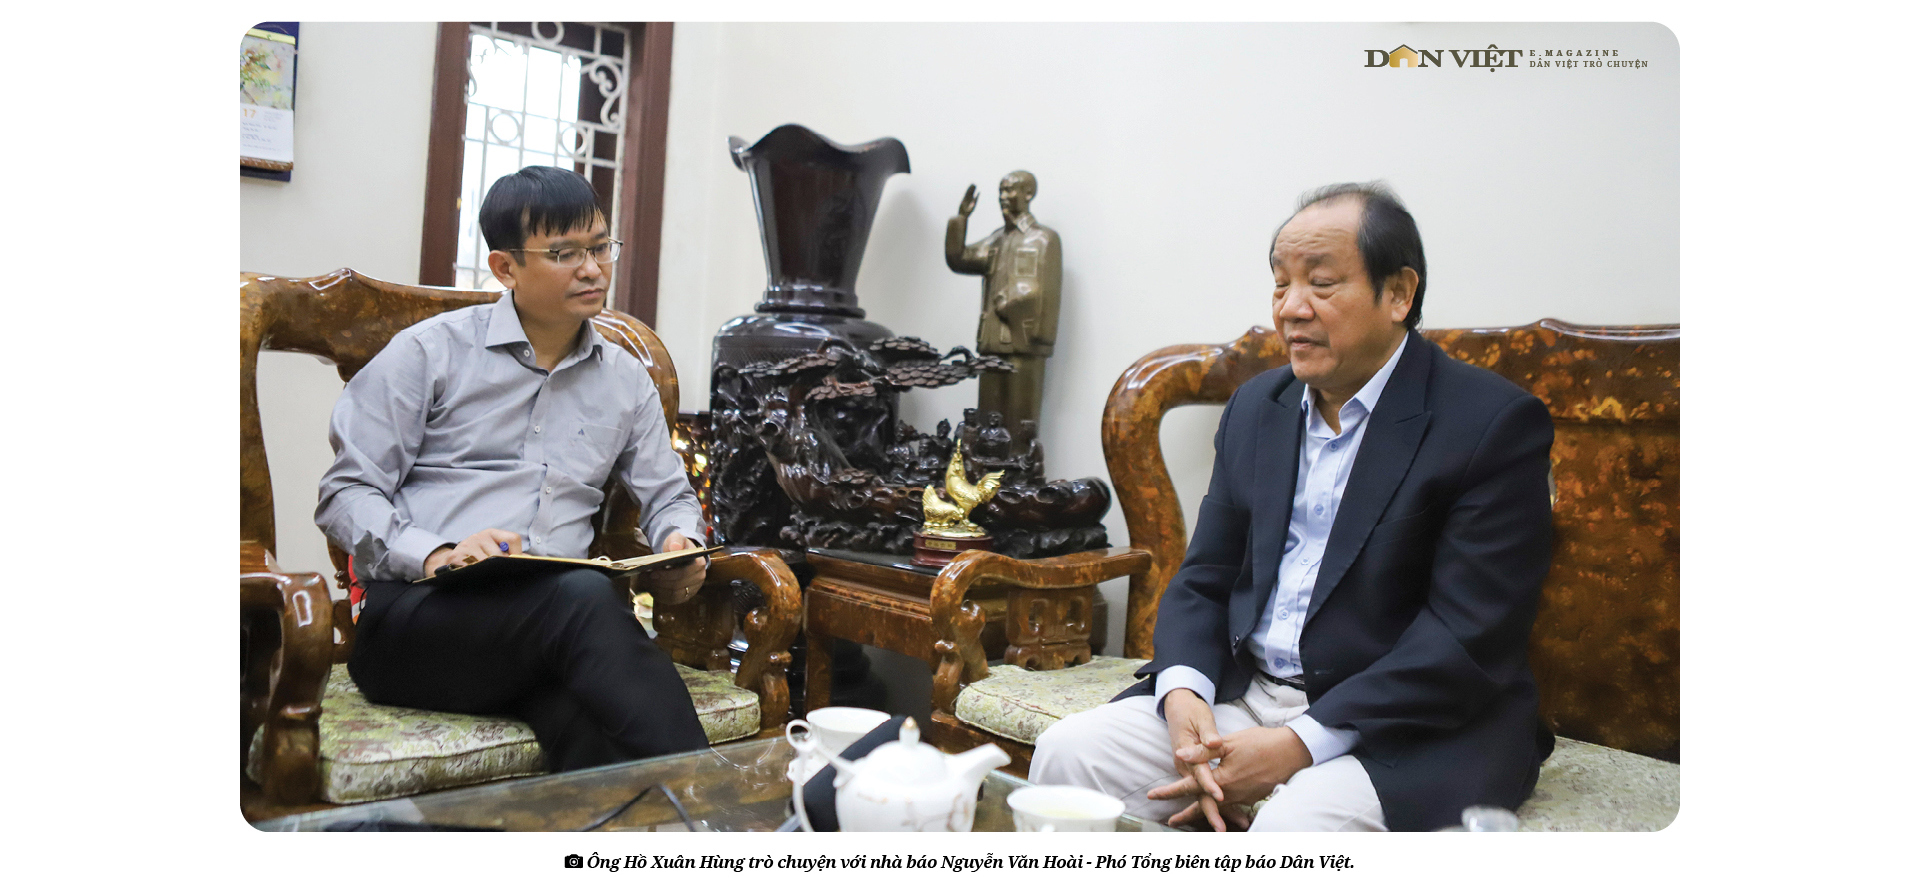 Nguyên Thứ trưởng Bộ NNPTNT, nguyên Chủ tịch UBND tỉnh Nghệ An Hồ Xuân Hùng: &quot;Một đời nặng nợ với dân với mình&quot; - Ảnh 4.